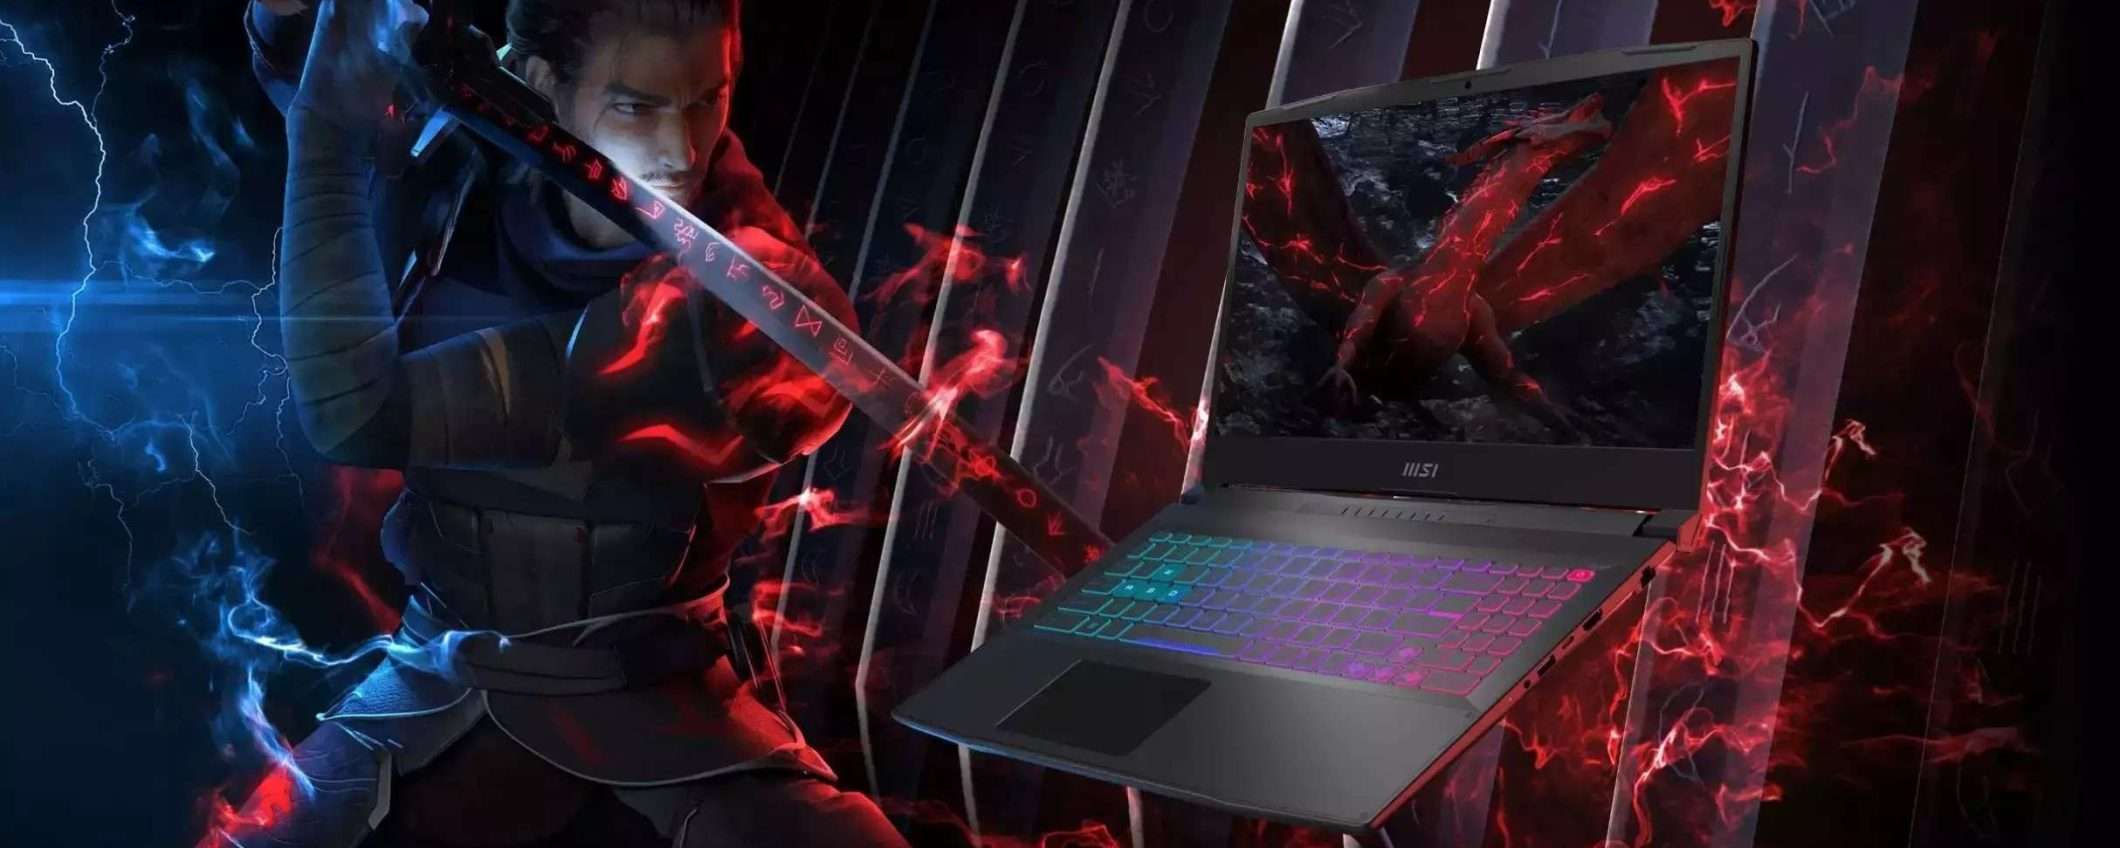 MSI Katana 15 in offerta: laptop da gaming a meno di 900€, anche a rate